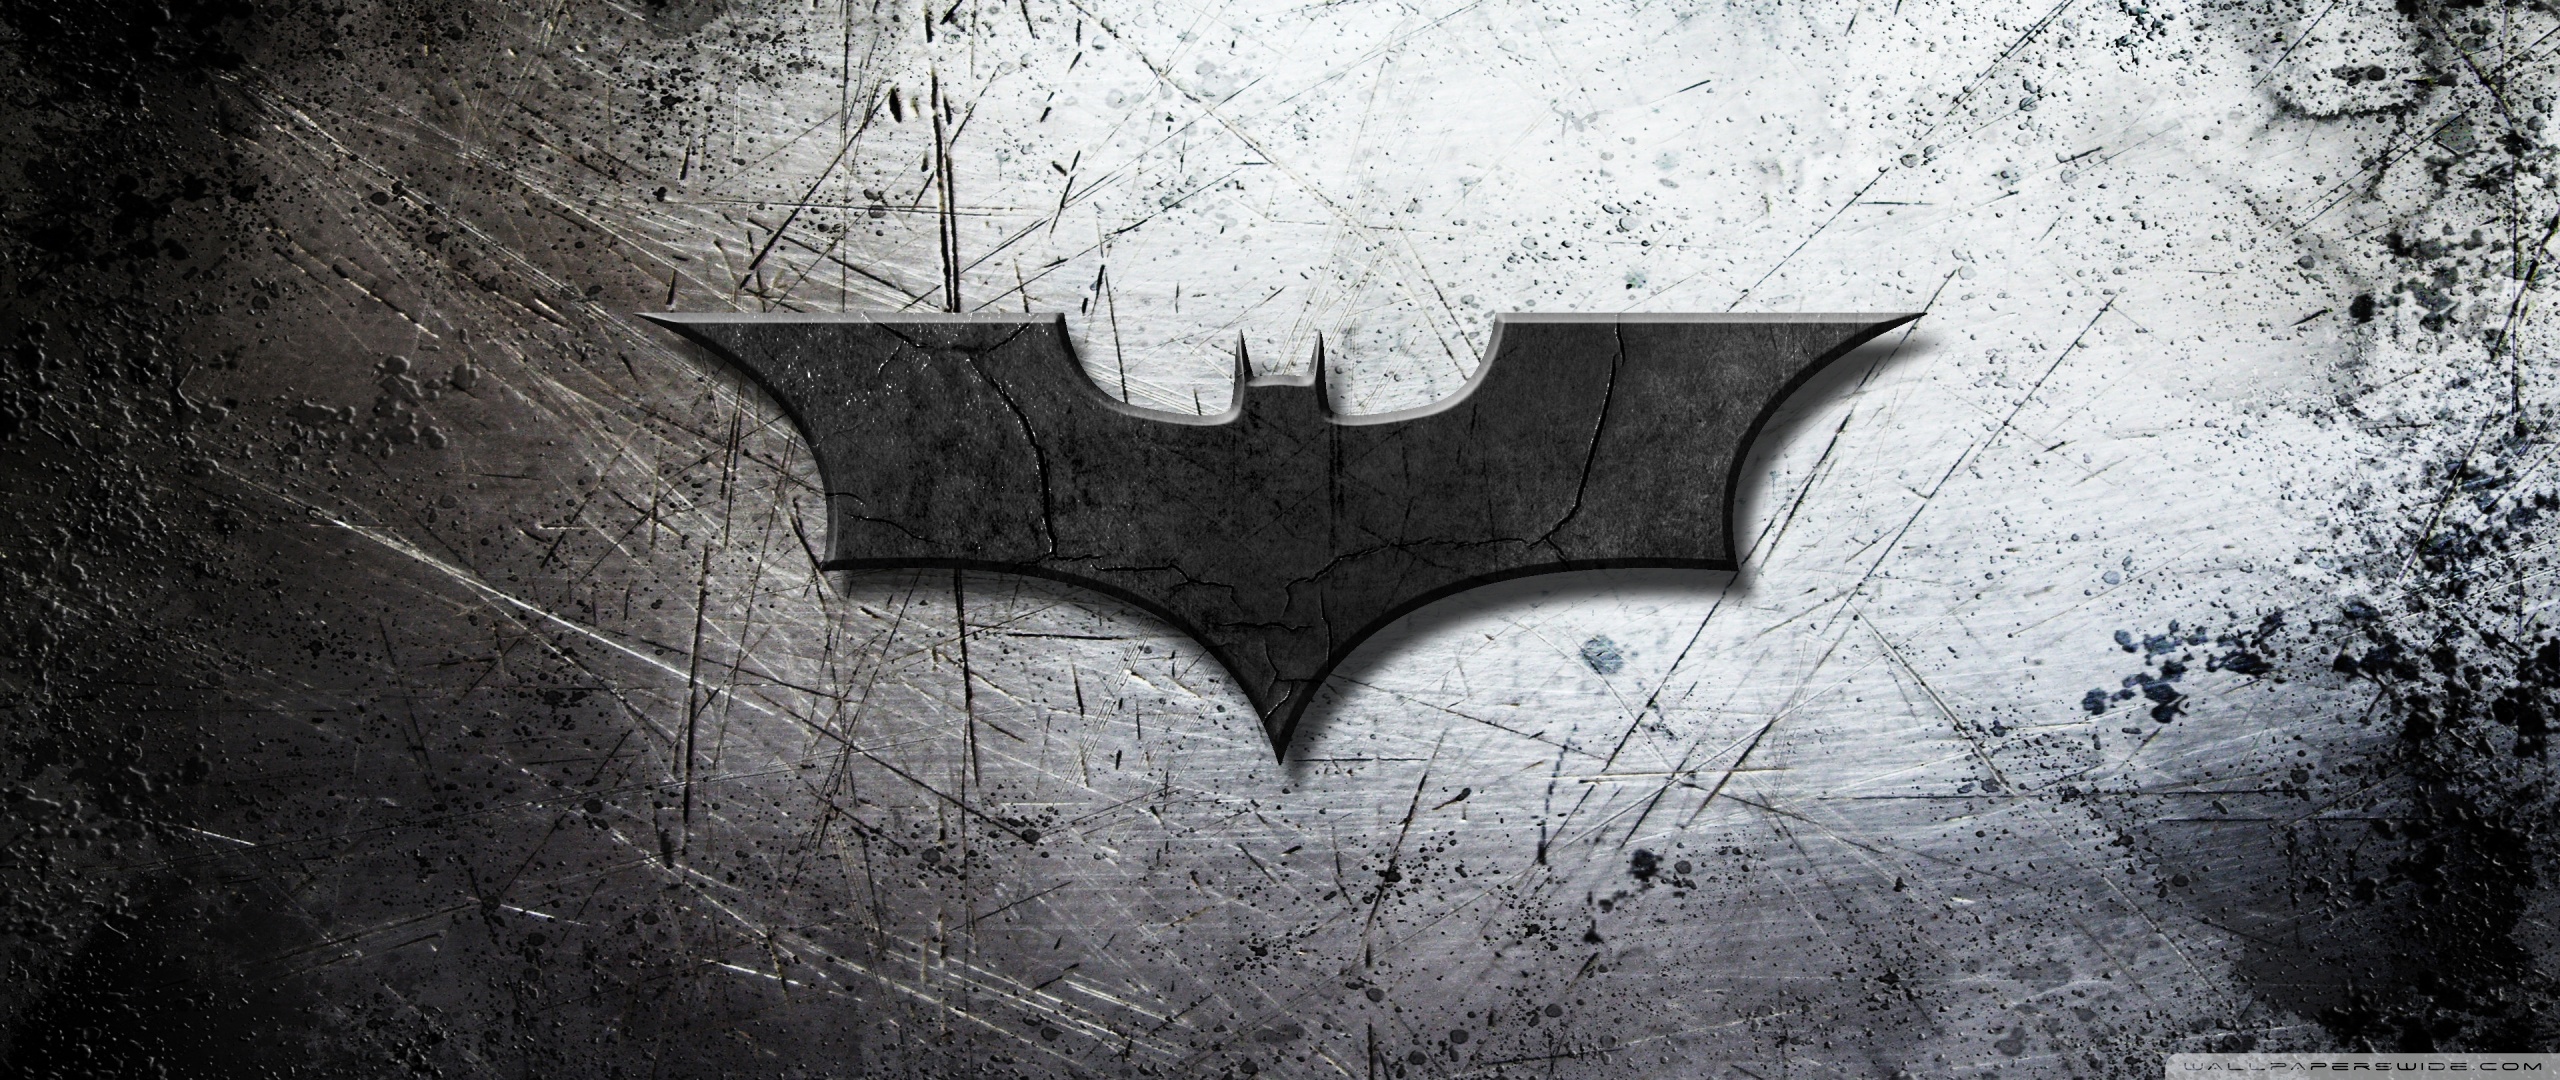 Batman Begins Wallpaper Hd - HD Wallpaper 